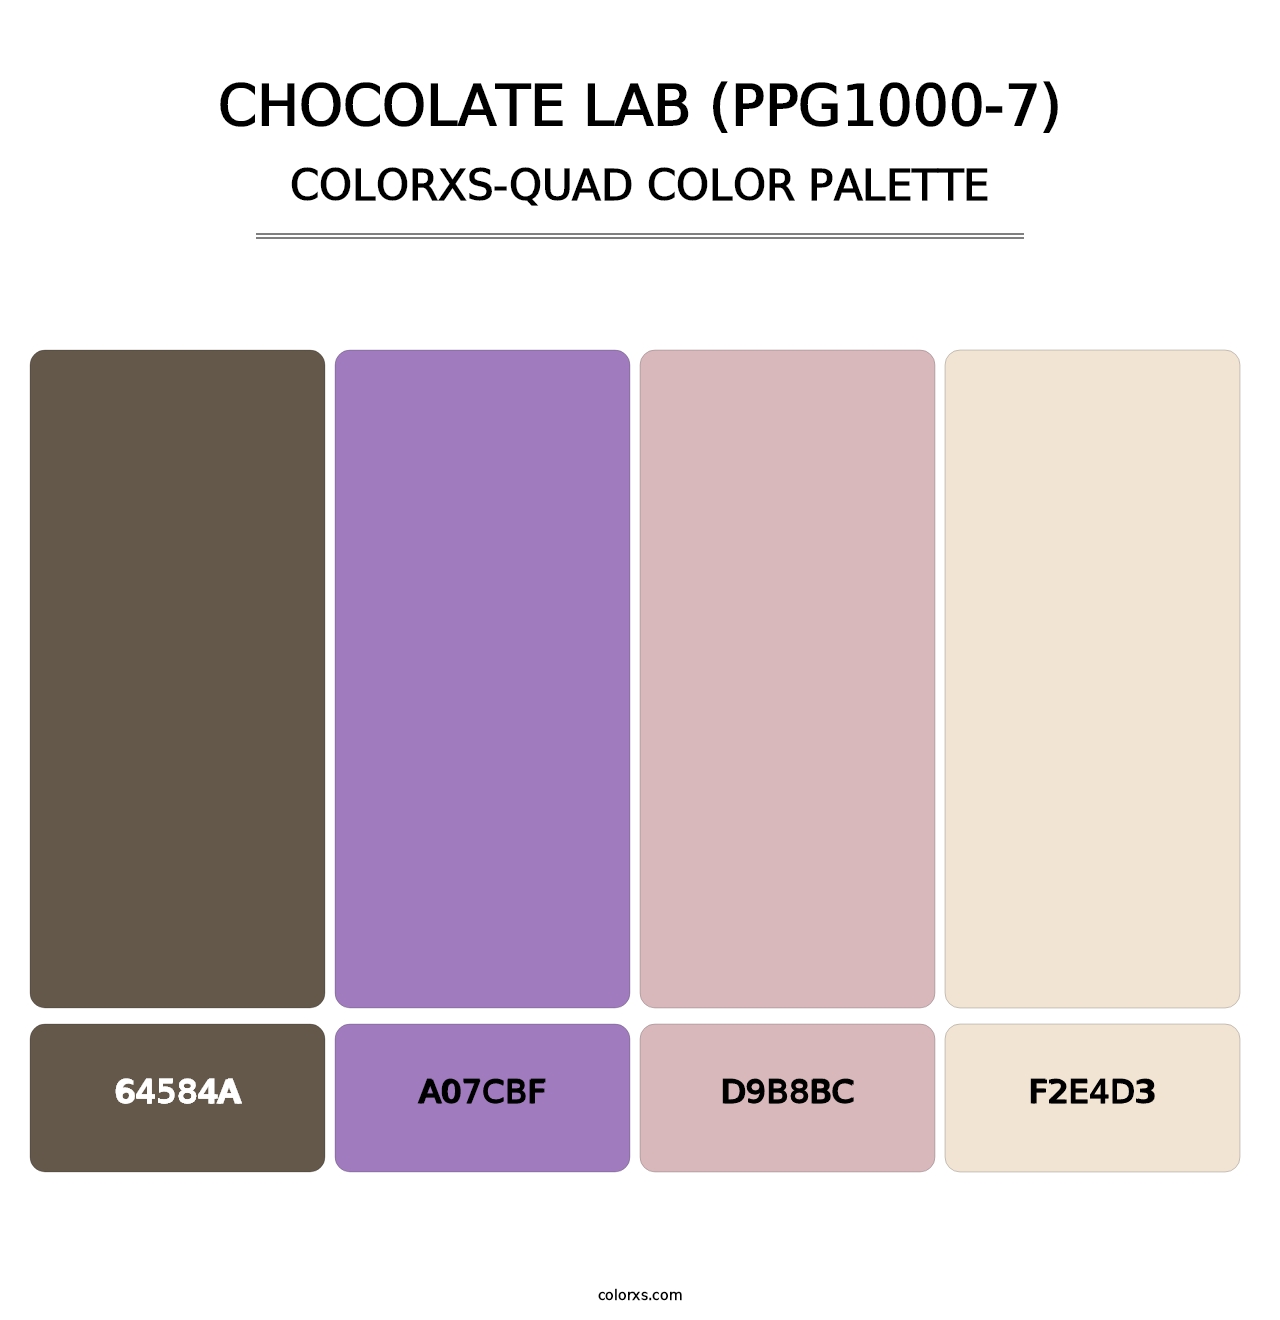 Chocolate Lab (PPG1000-7) - Colorxs Quad Palette